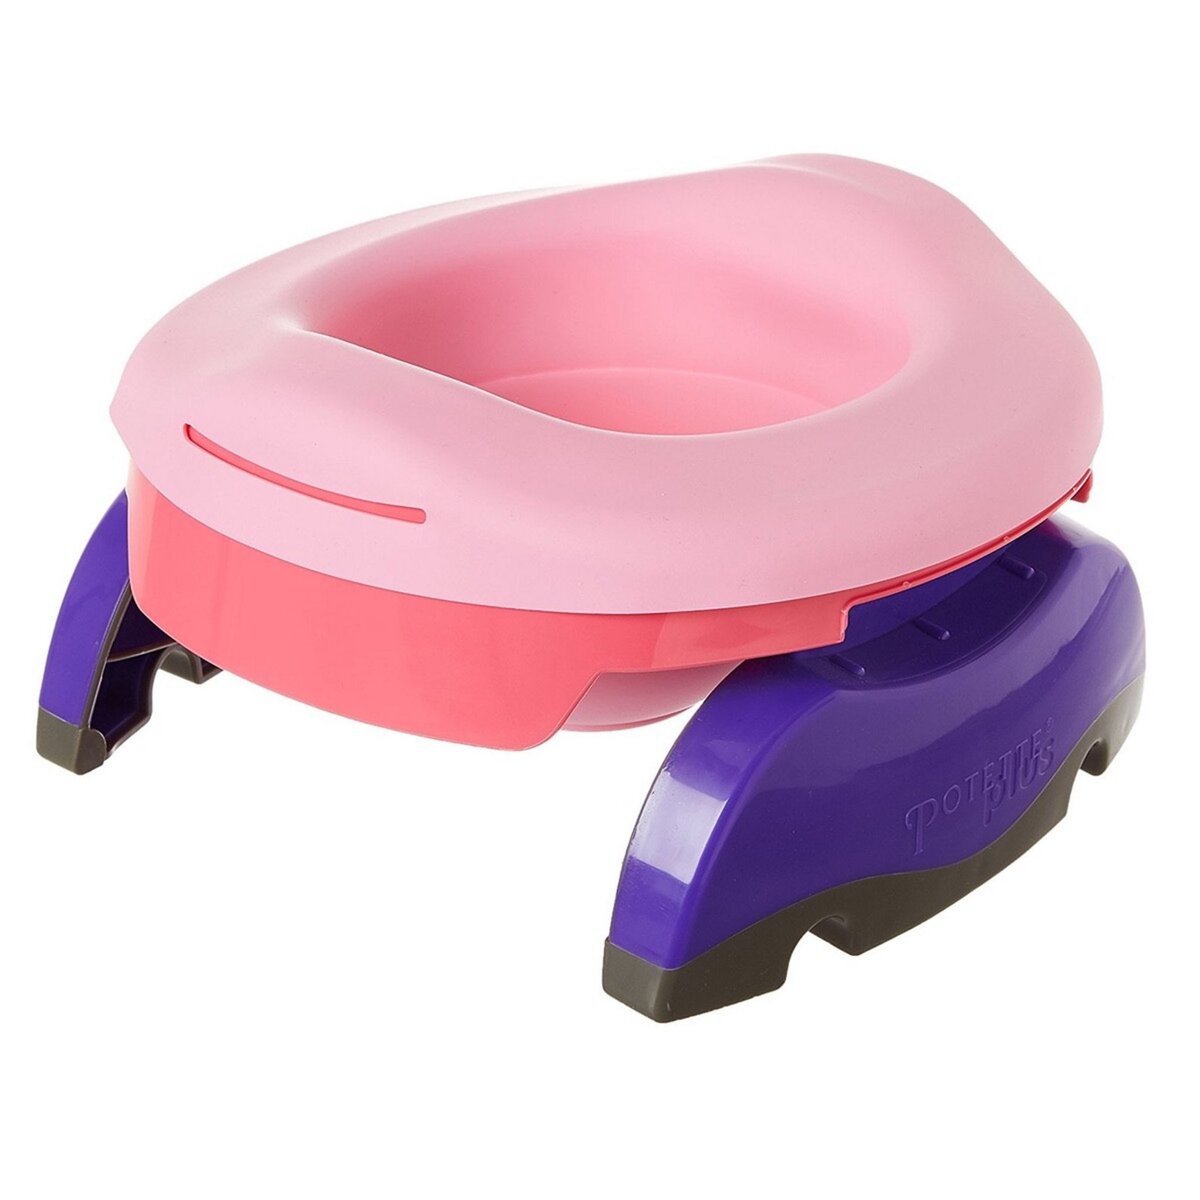 Pot bébé nomade - réducteur de WC - Rose clair - Kiabi - 37.90€